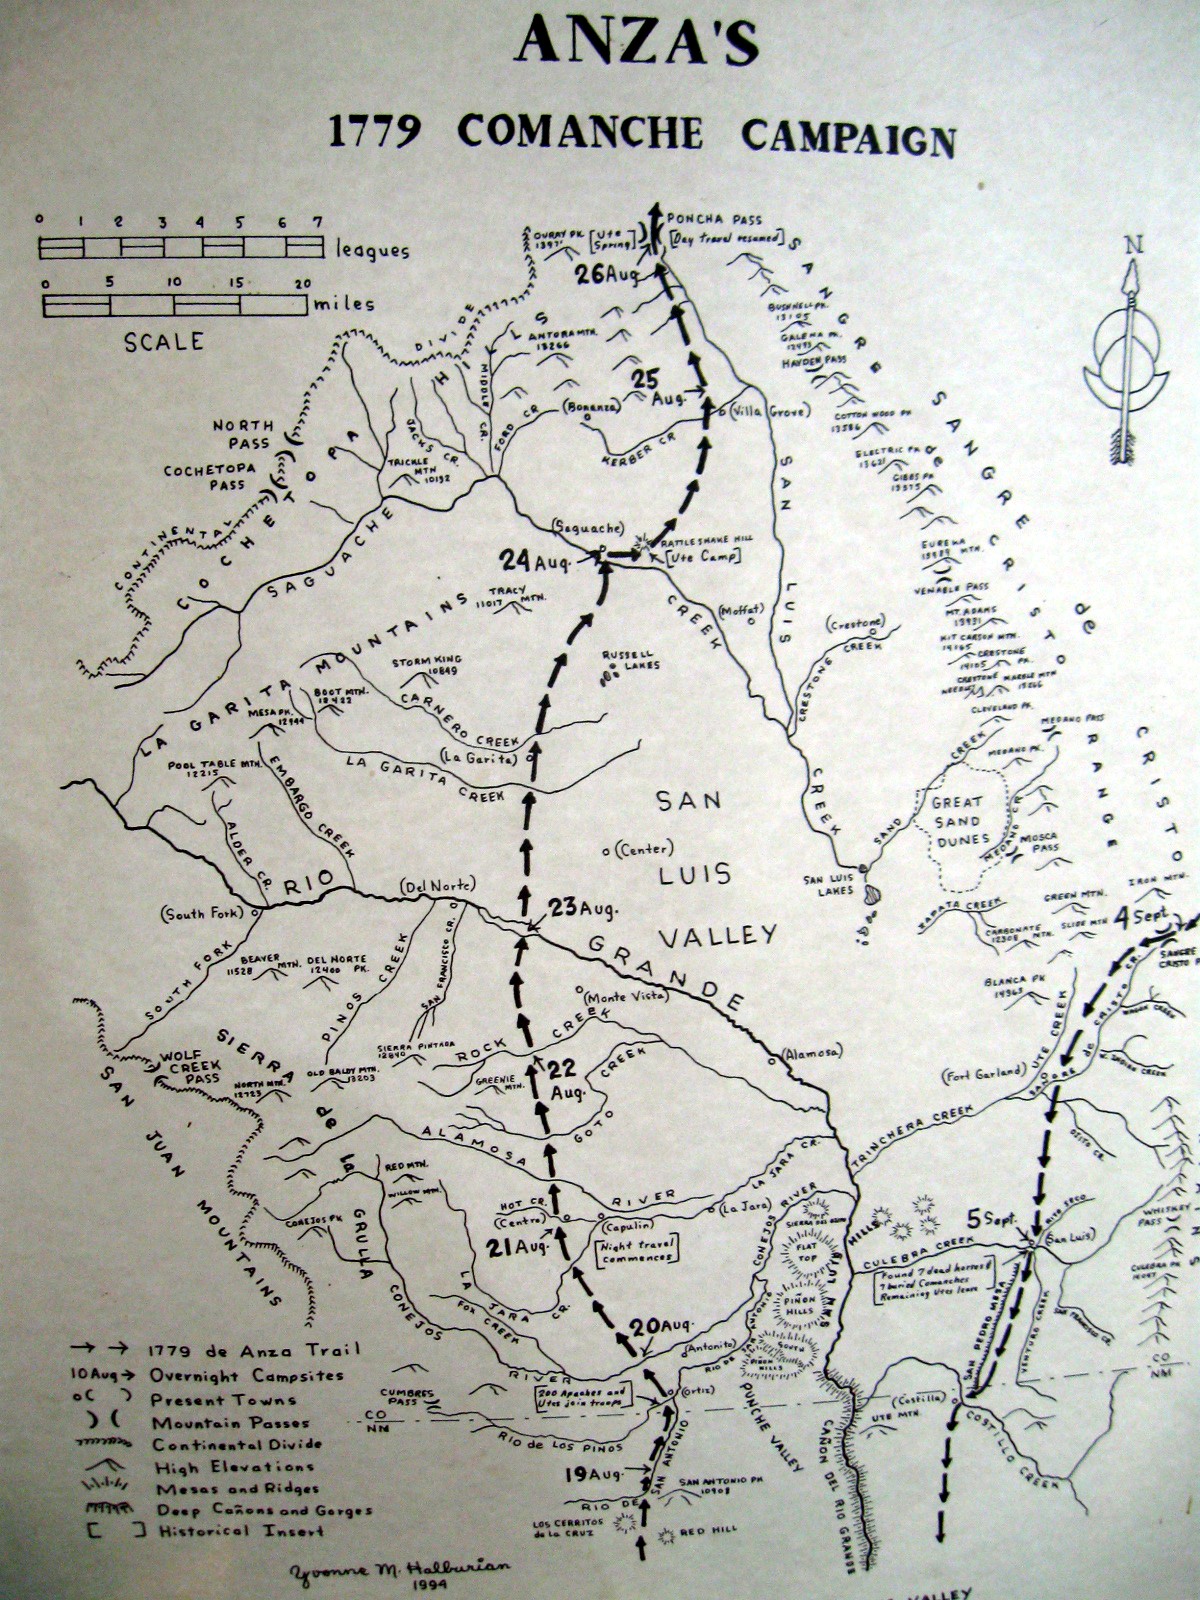 [Anza's+1779+Comanche+Campaign+Map+small.JPG]